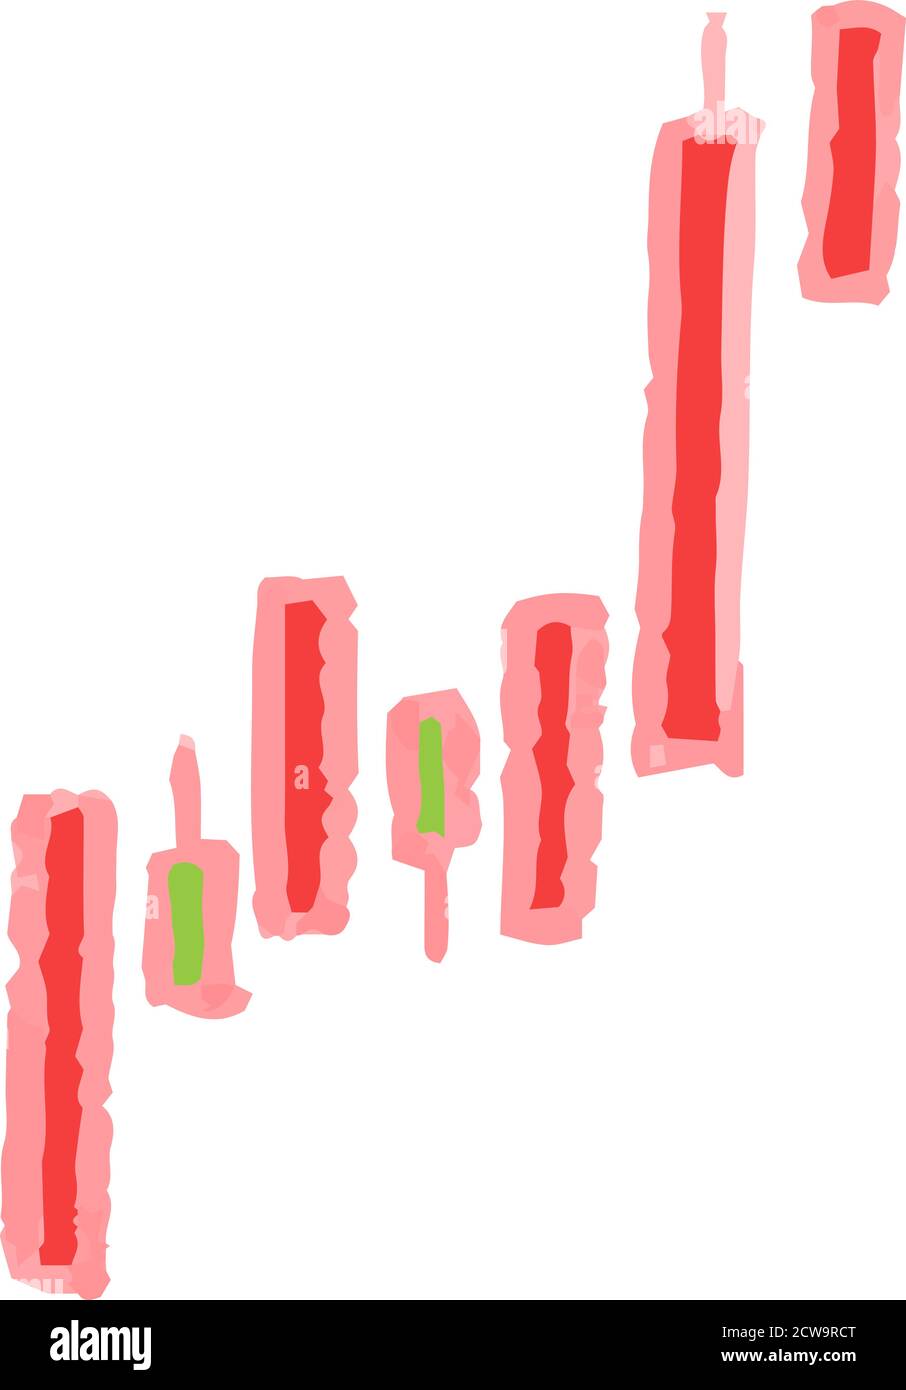 Dies ist eine Illustration der POP-Illustration, die einen Stock zeigt Preisspitzen gesetzt Stock Vektor